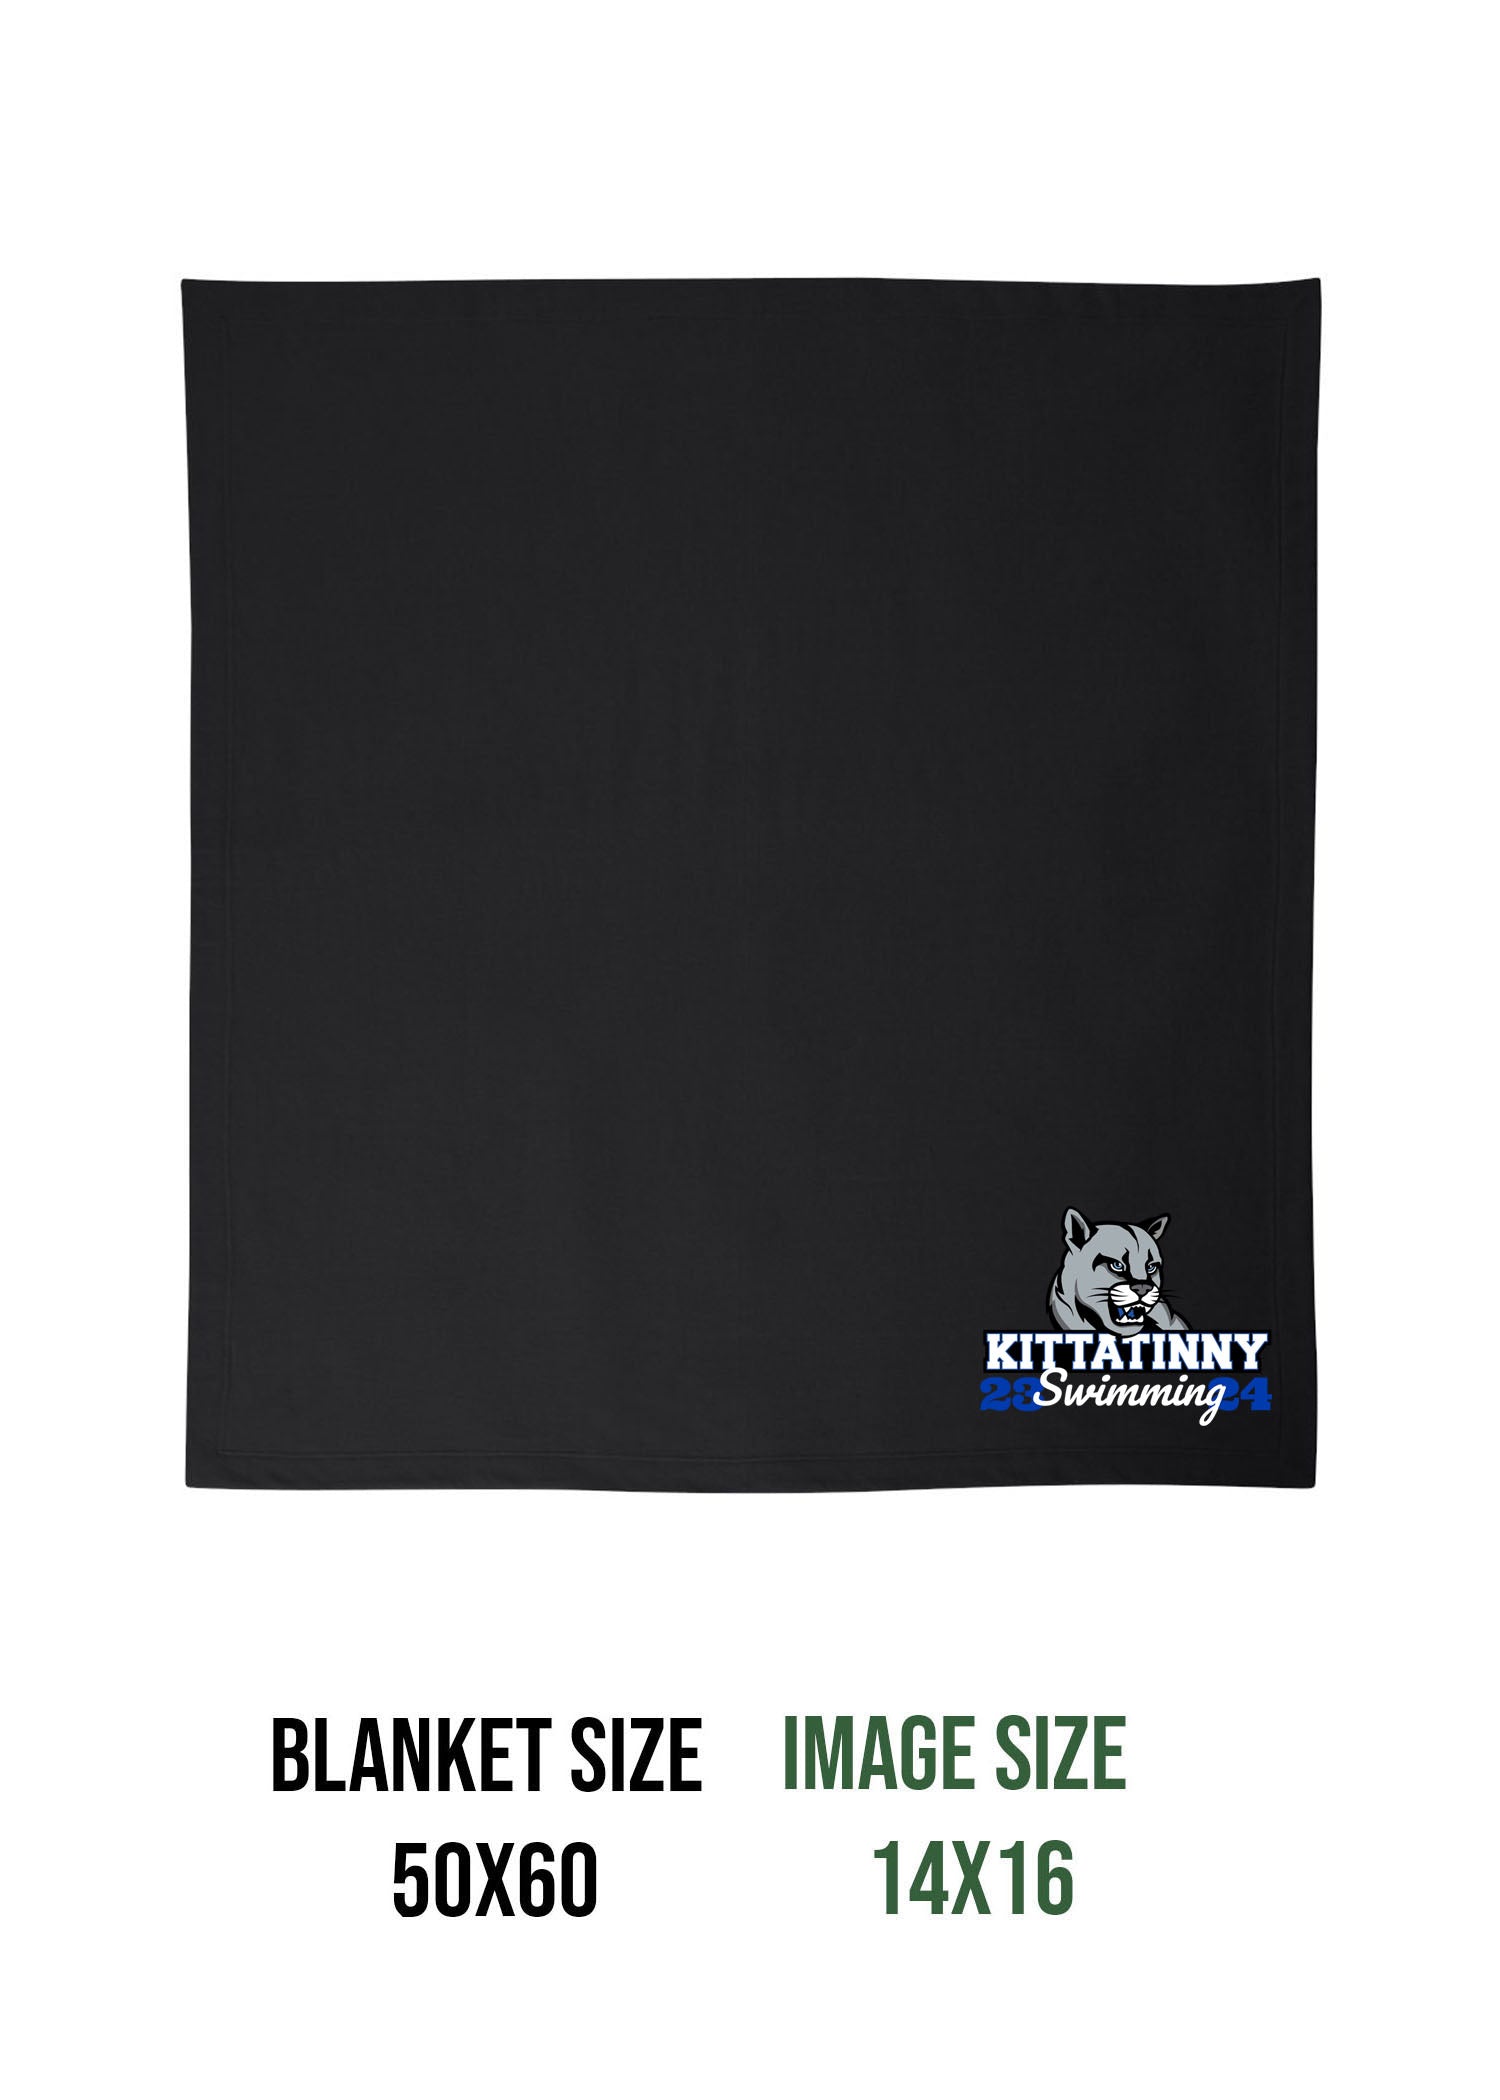 Kittatinny Swimming Design 2 Blanket